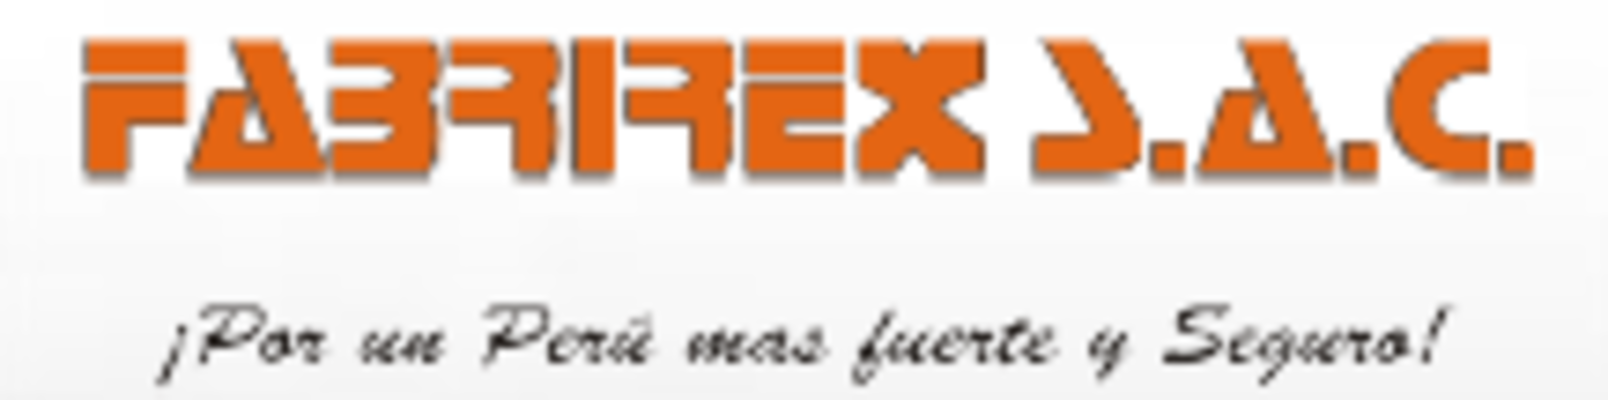 Fabrirex S.A.C  | Construex